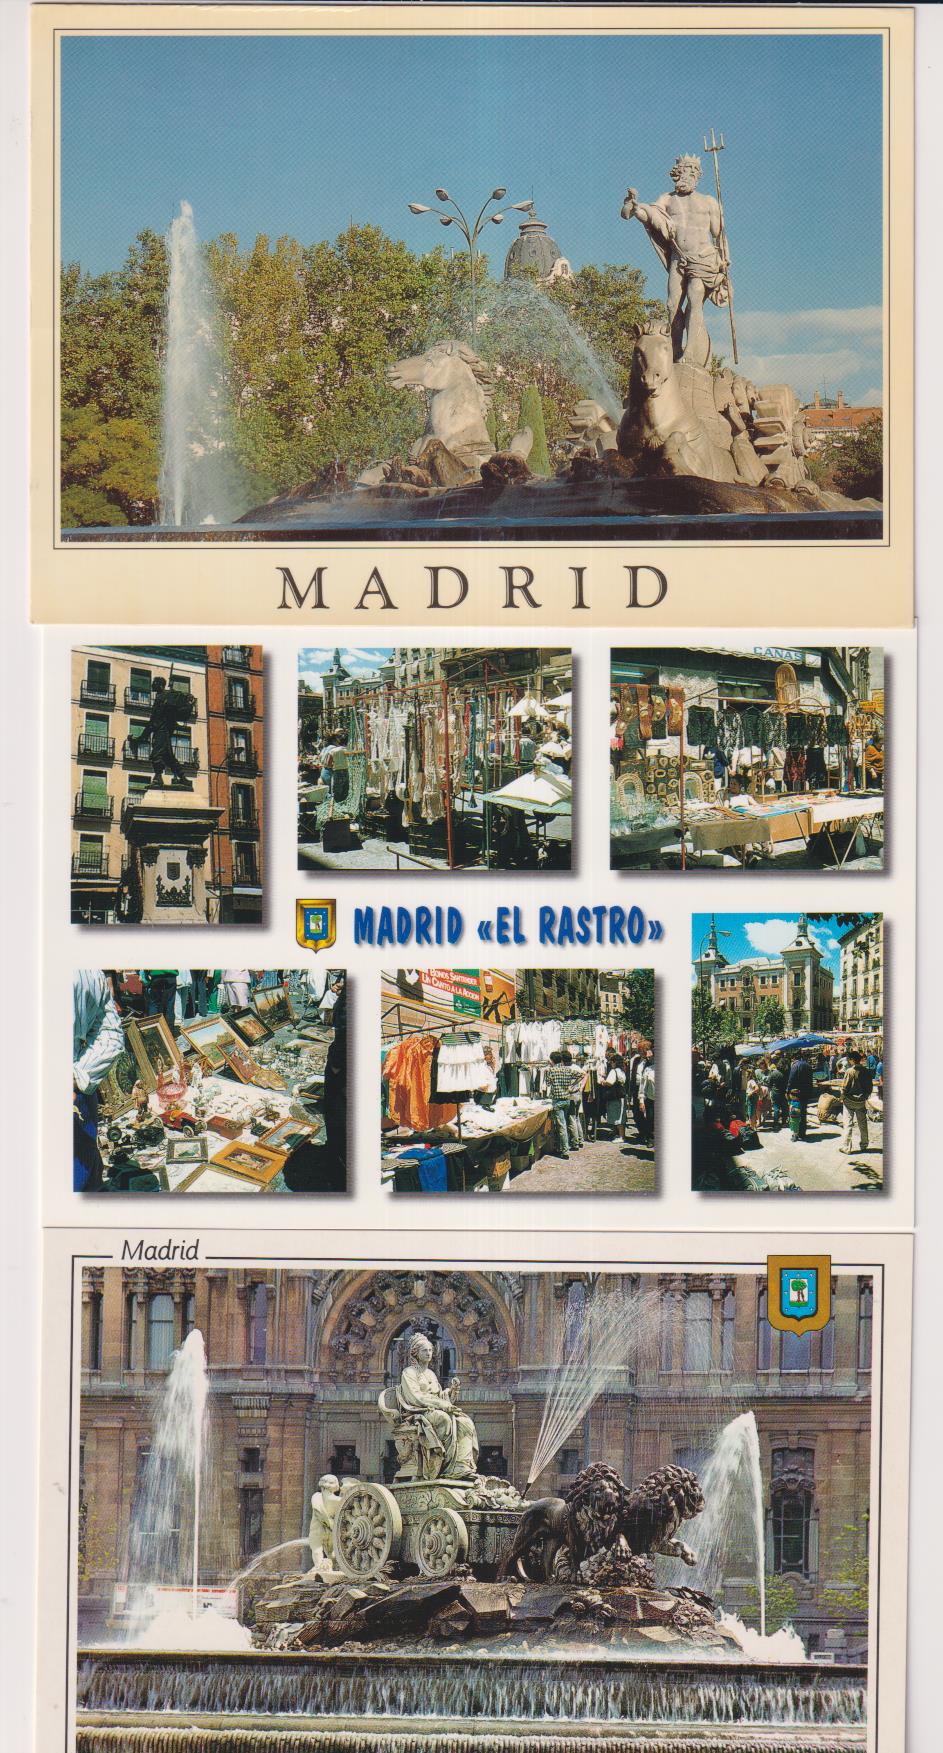 Madrid. lote de 3 postales. El rastro, la Cibeles y fuente de Neptuno- sin circular